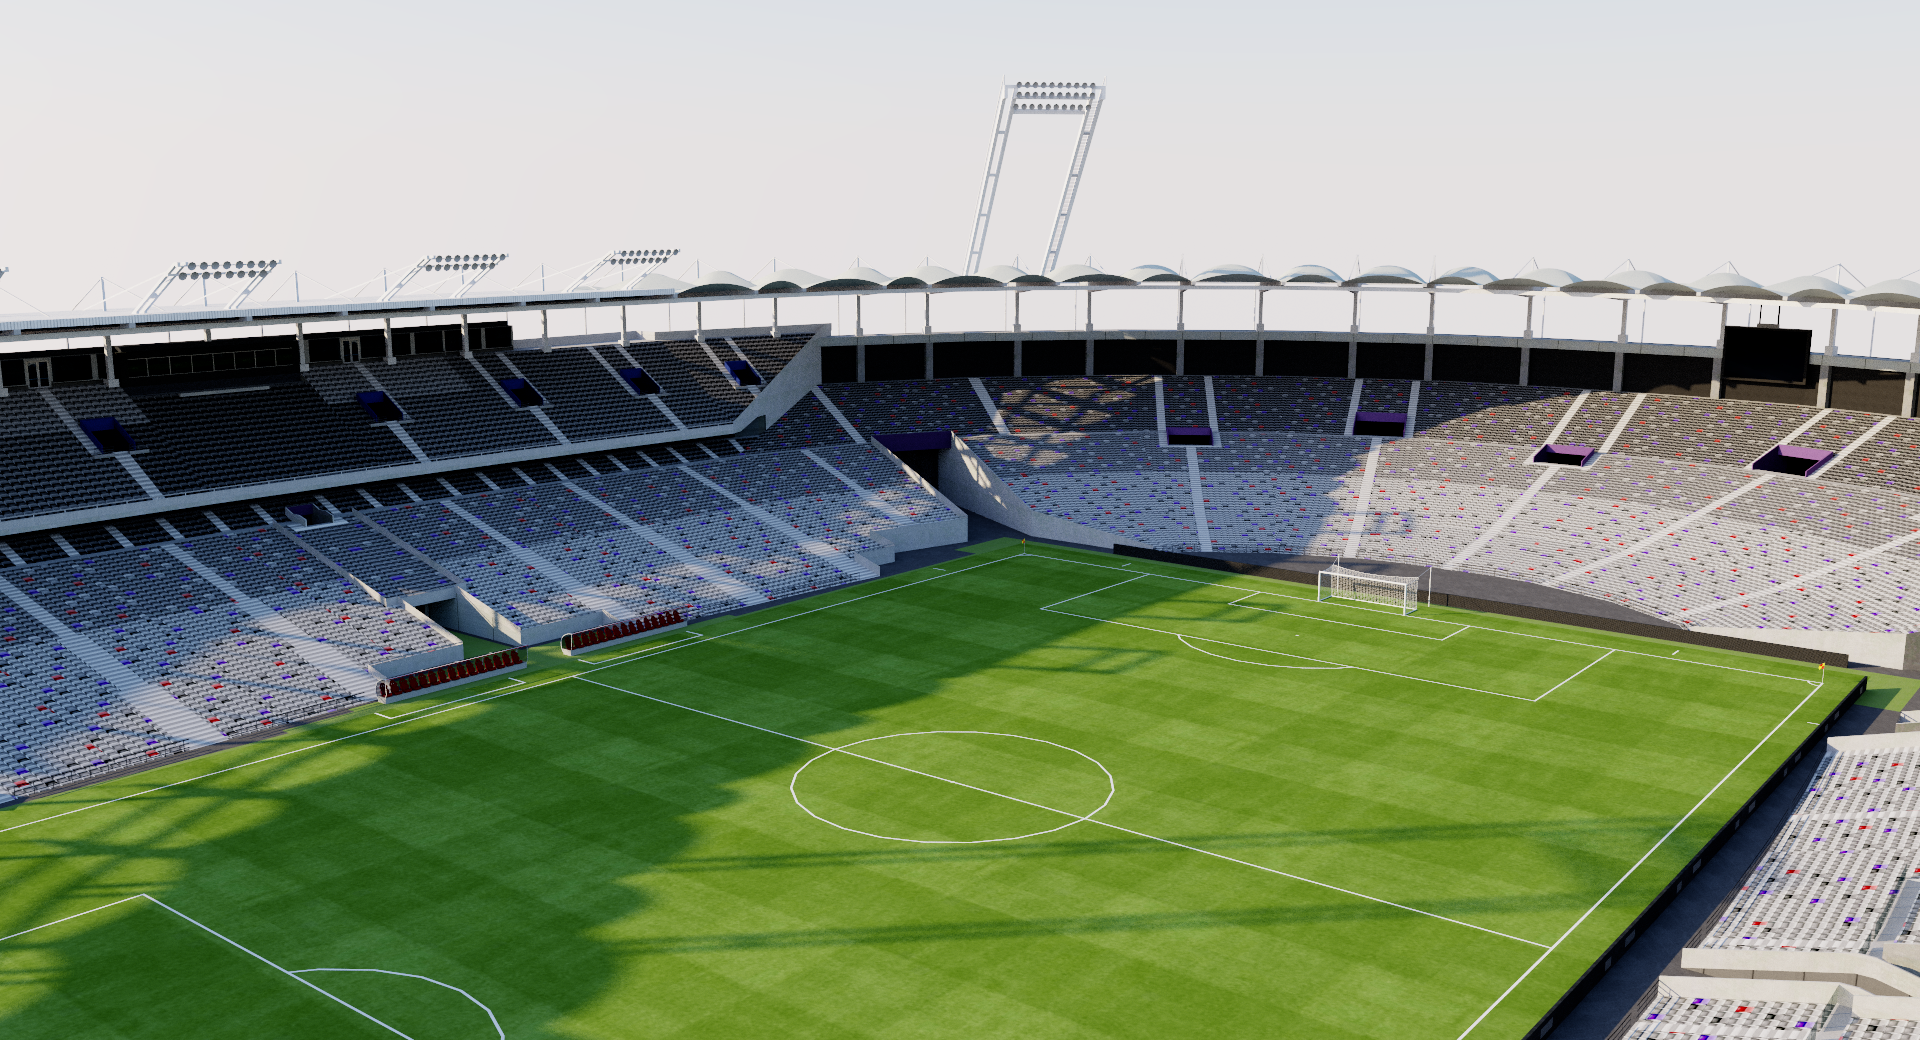 Stadium Municipal de Toulouse 3D model